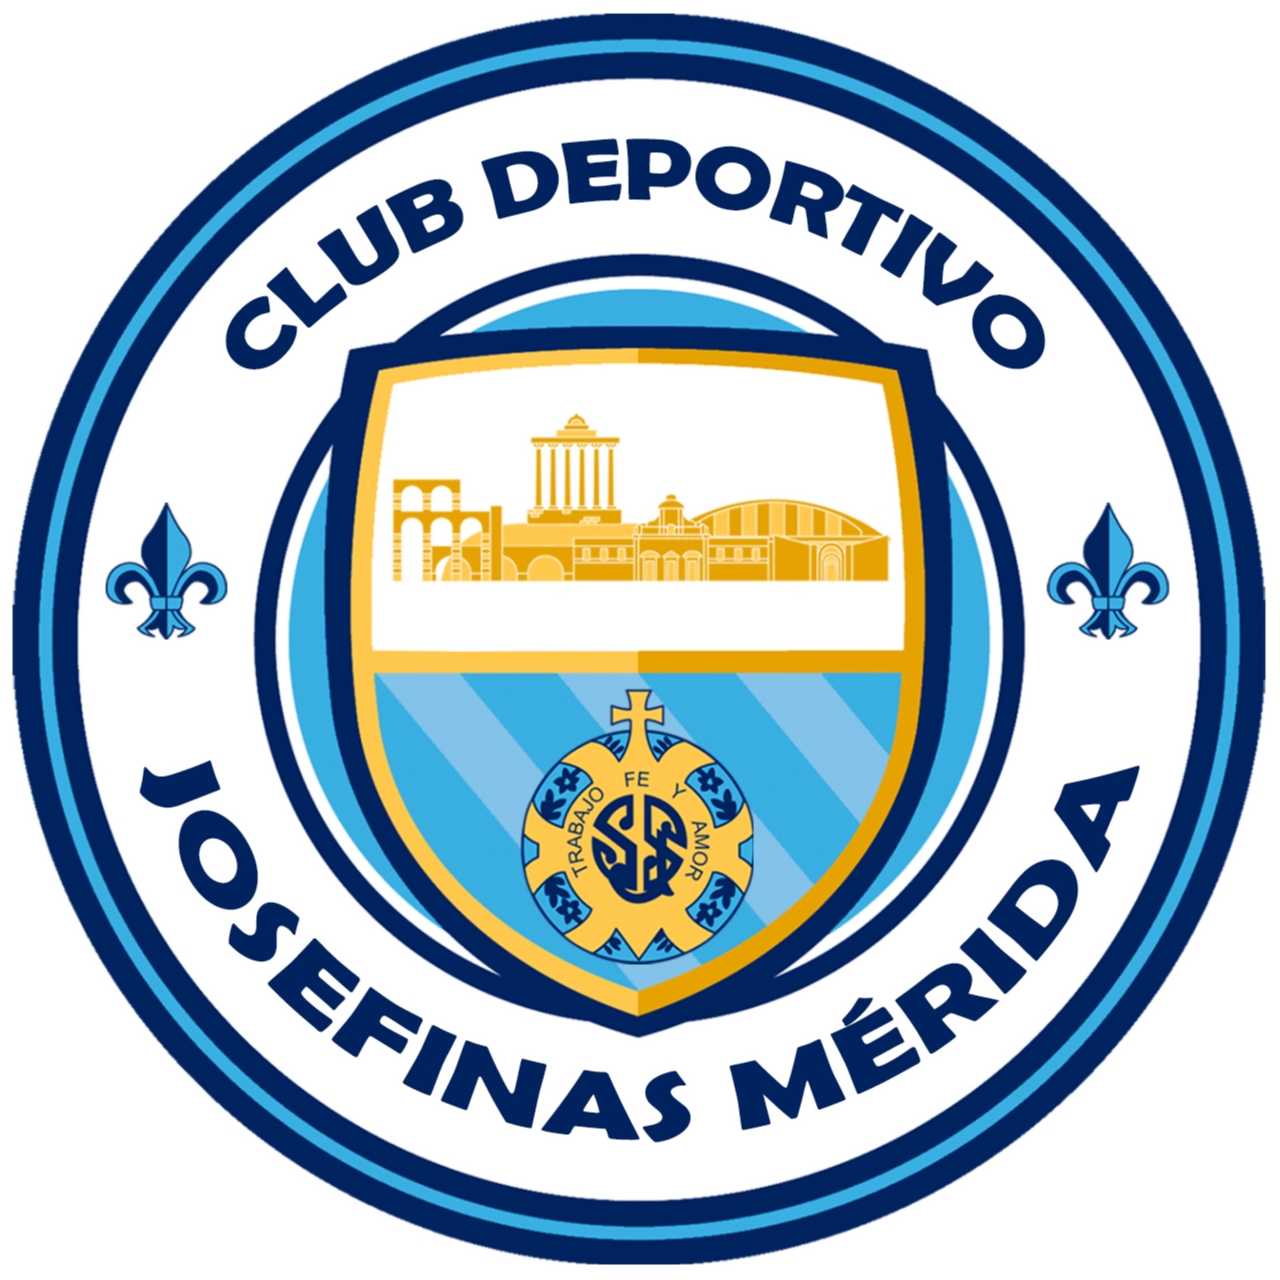 CLUB DEPORTIVO JOSEFINAS MERIDA